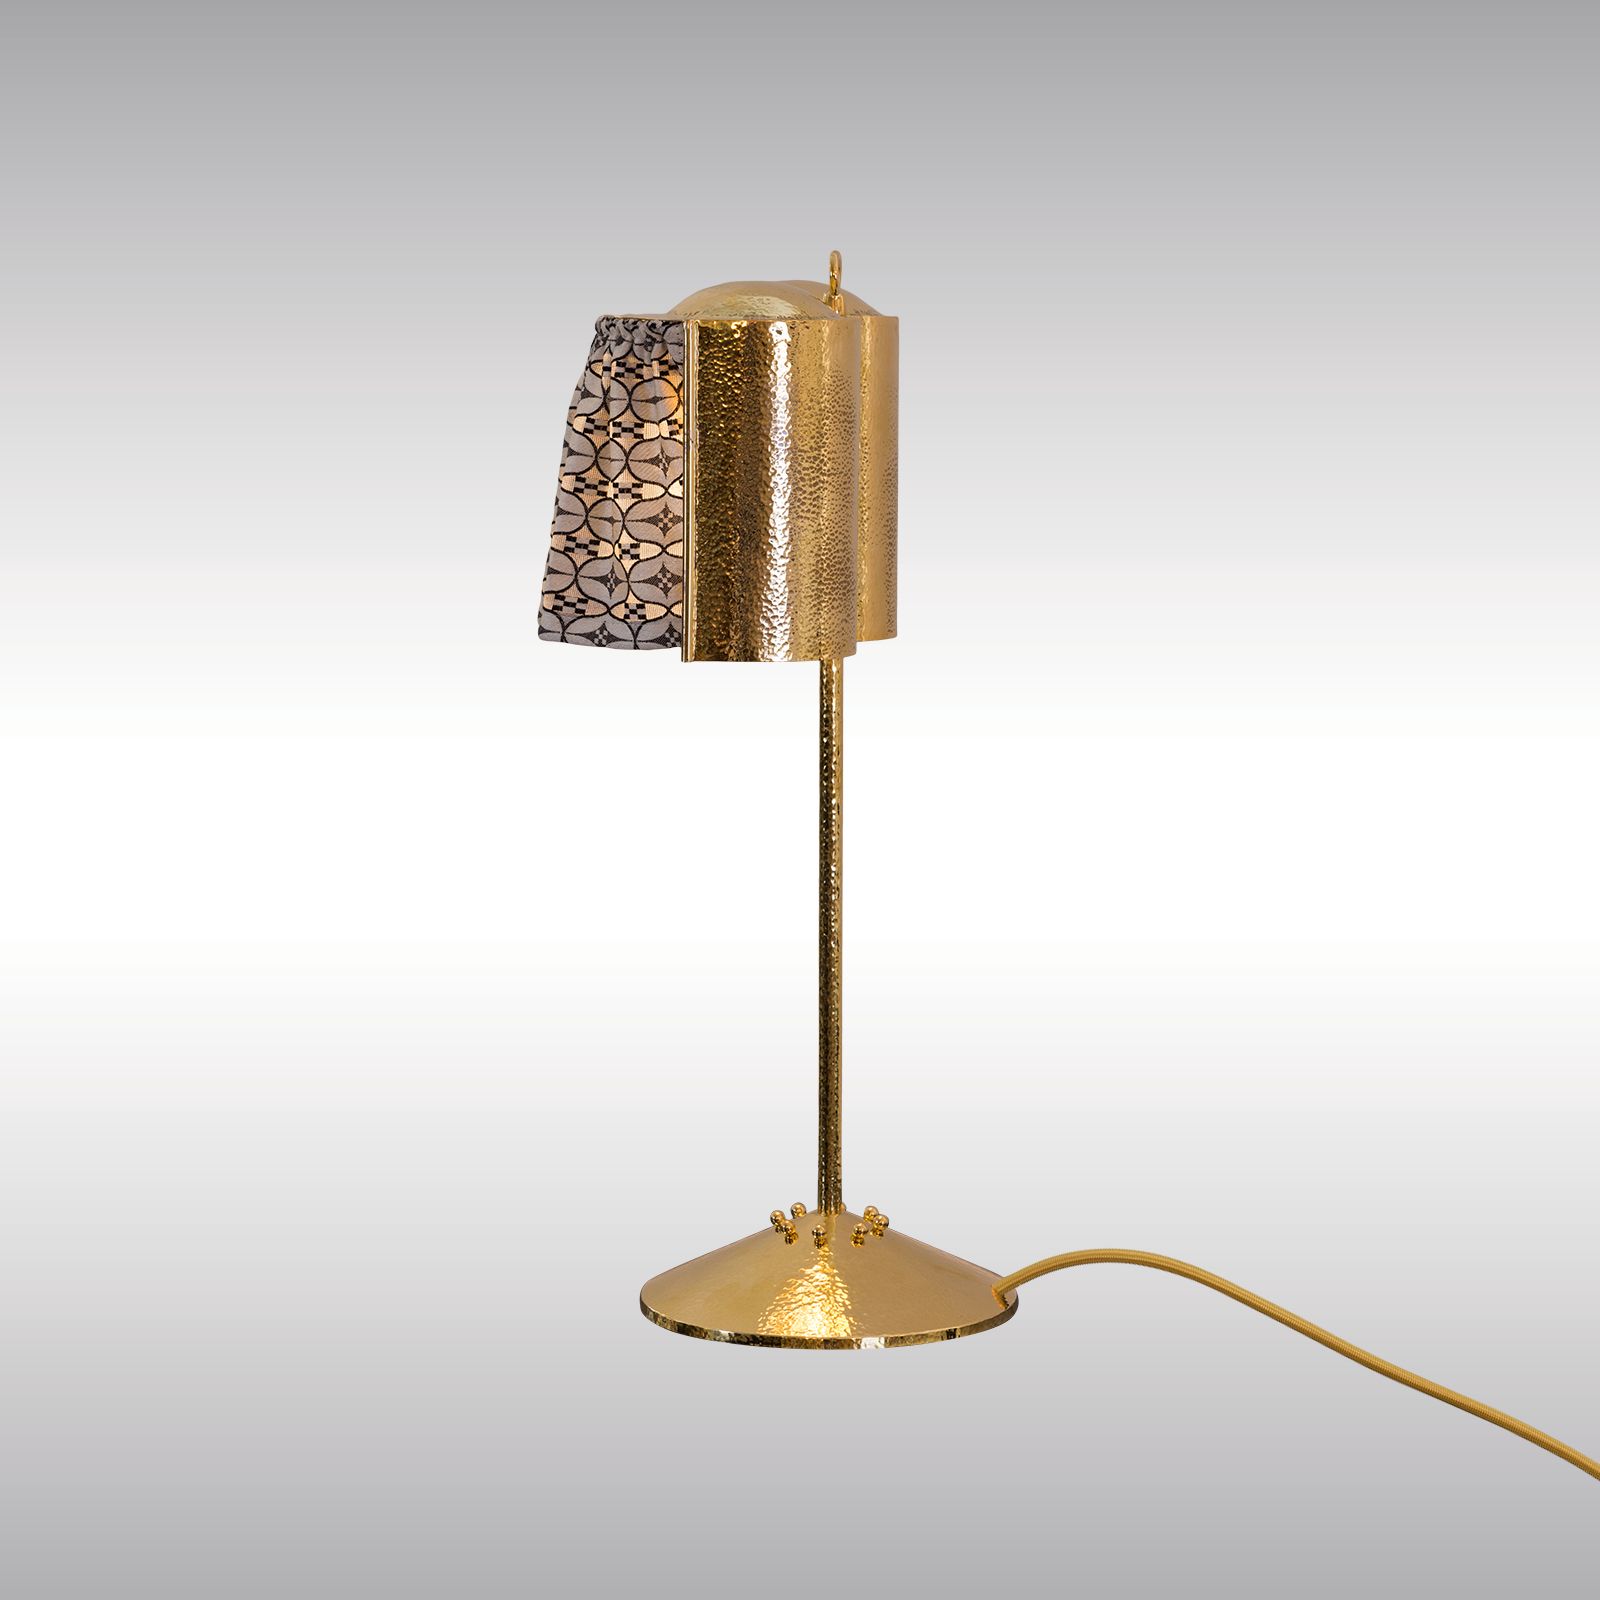 WOKA LAMPS VIENNA - OrderNr.:  22001|Josef Hoffmann and Wiener Werkstaeatte Desk Lamp - candle-holder